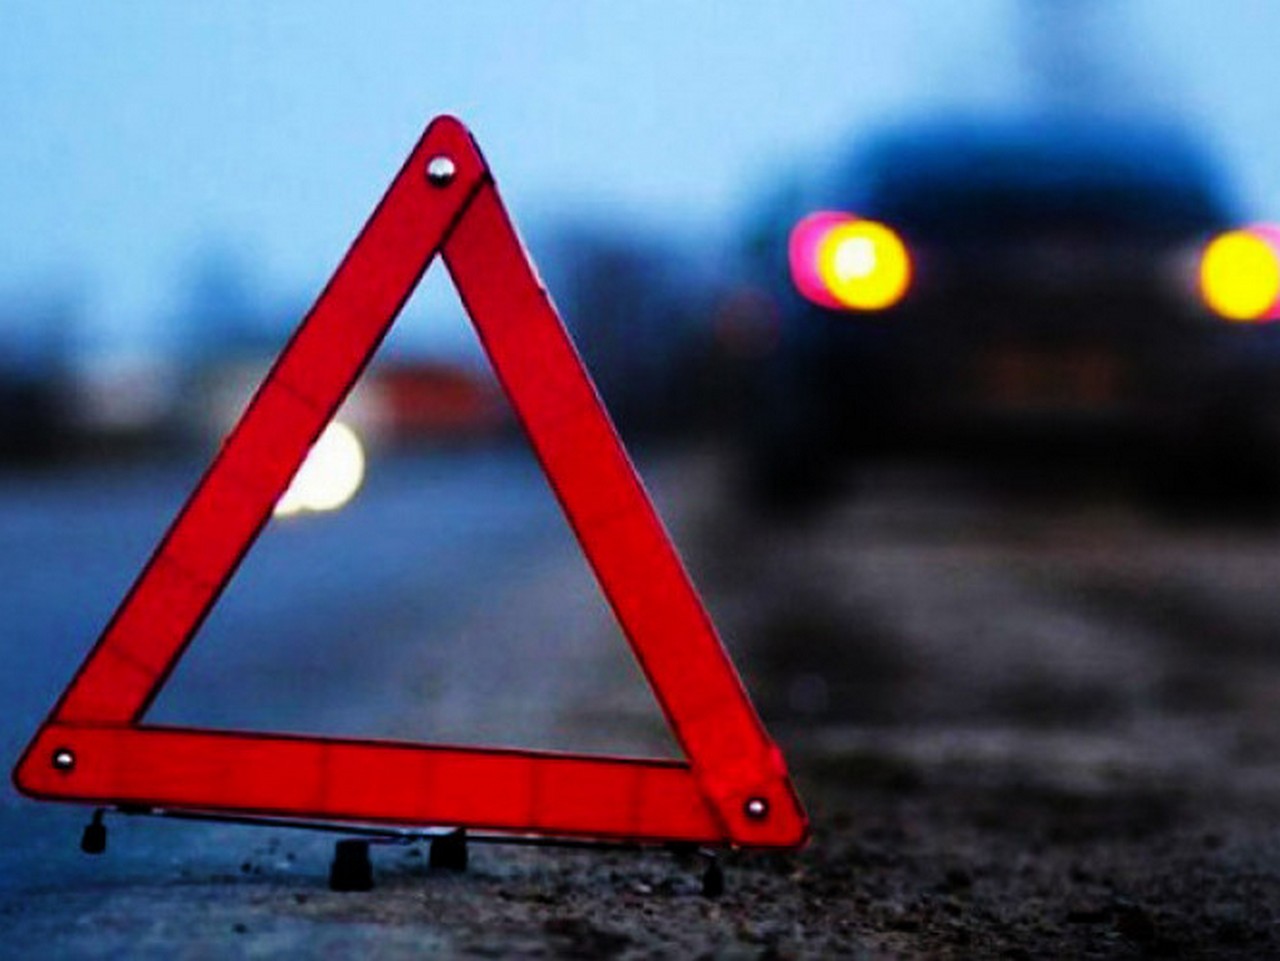 У вівторок, 6 листопада, в Ужгороді сталася дорожньо-транспортна пригода. Аварія трапилася ввечері на вулиці Гагаріна.